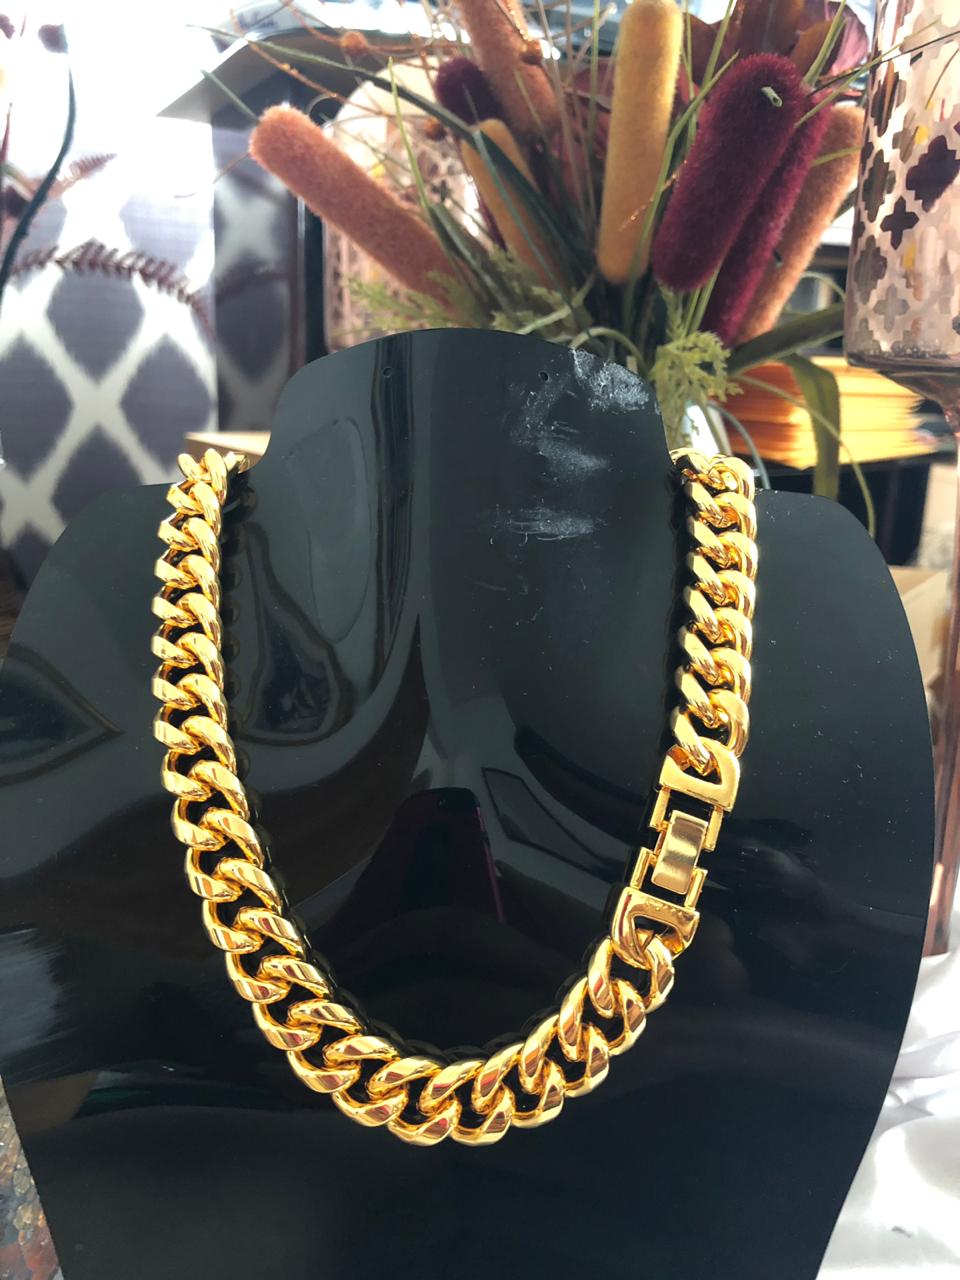 N000202 (necklace + bracelet set)